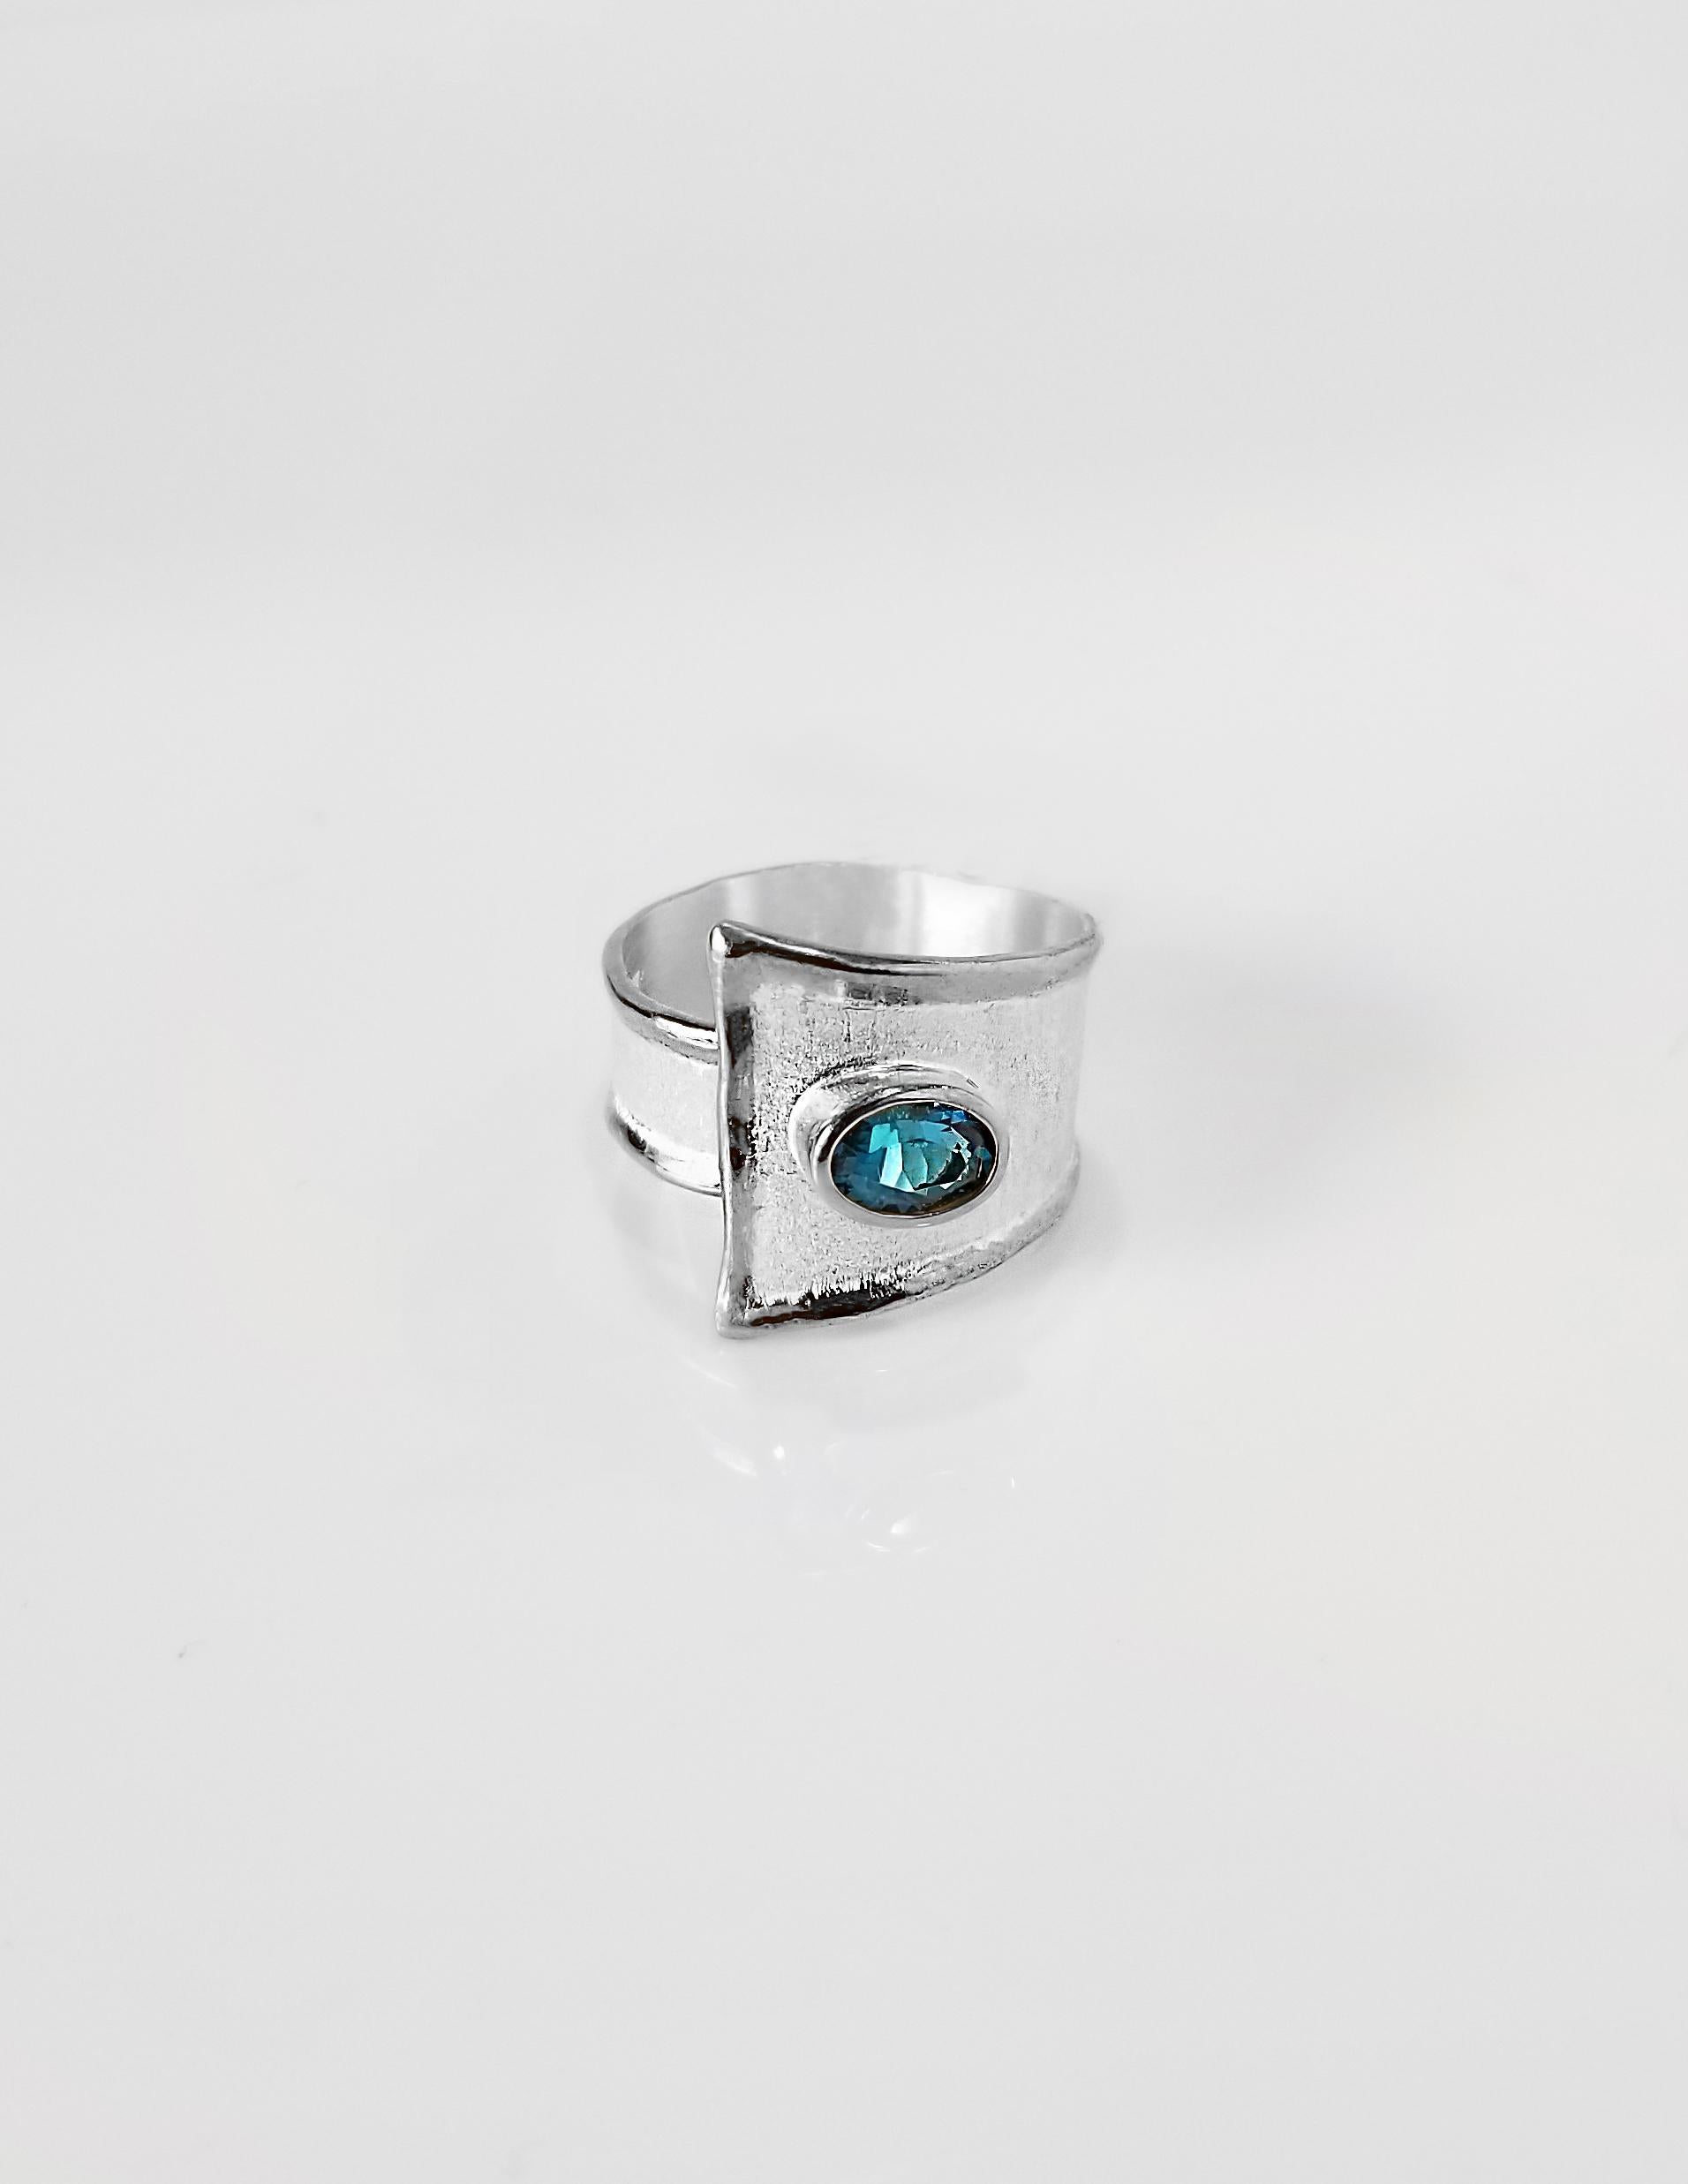 La bague à anneau réglable Yianni designer Fine Silver 100% Handmade Artisan est réalisée pour la collection Ammos et comporte une topaze bleue de Londres de 1,60 carat. Cette magnifique bague à anneau design est complétée par une technique